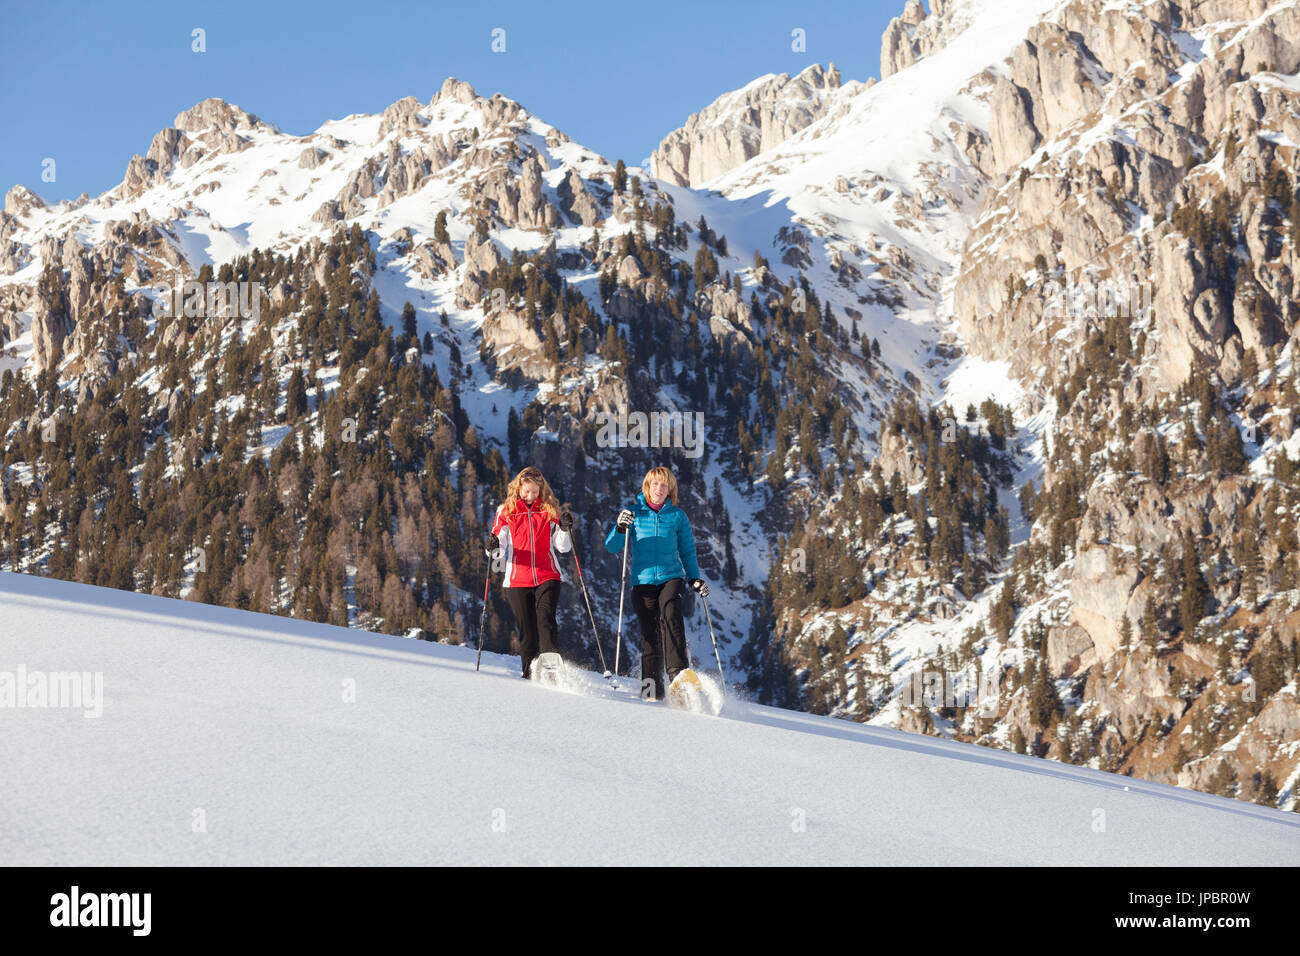 zwei Modelle gehen mit Schneeschuhen auf Neuschnee Gefühl, die Emotion des Pulver, Villnöss, Bozen Provinz, Südtirol, Trentino Alto Adige, Italien, Europa Stockfoto